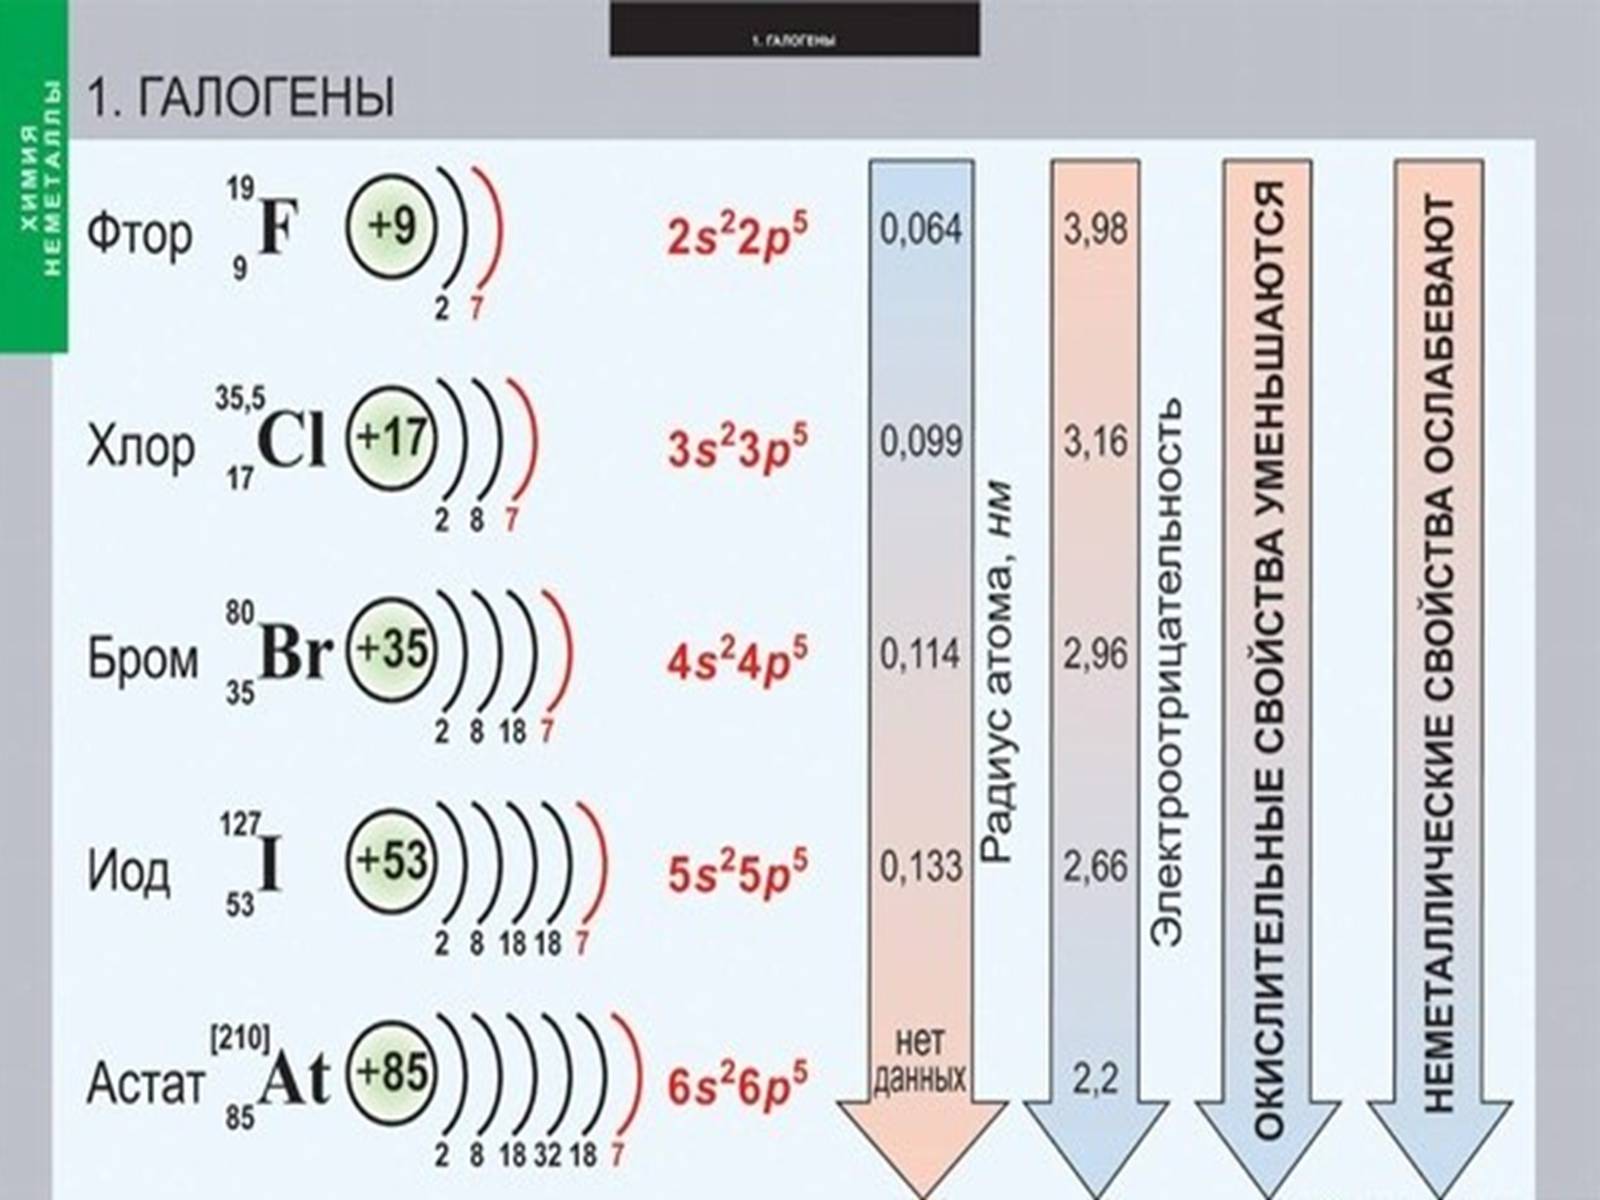 Соединение бария и хлора. Формула фтор строение электронных оболочек. Составьте схему электронного строения атома брома. Галогены. Электронное строение галогенов.